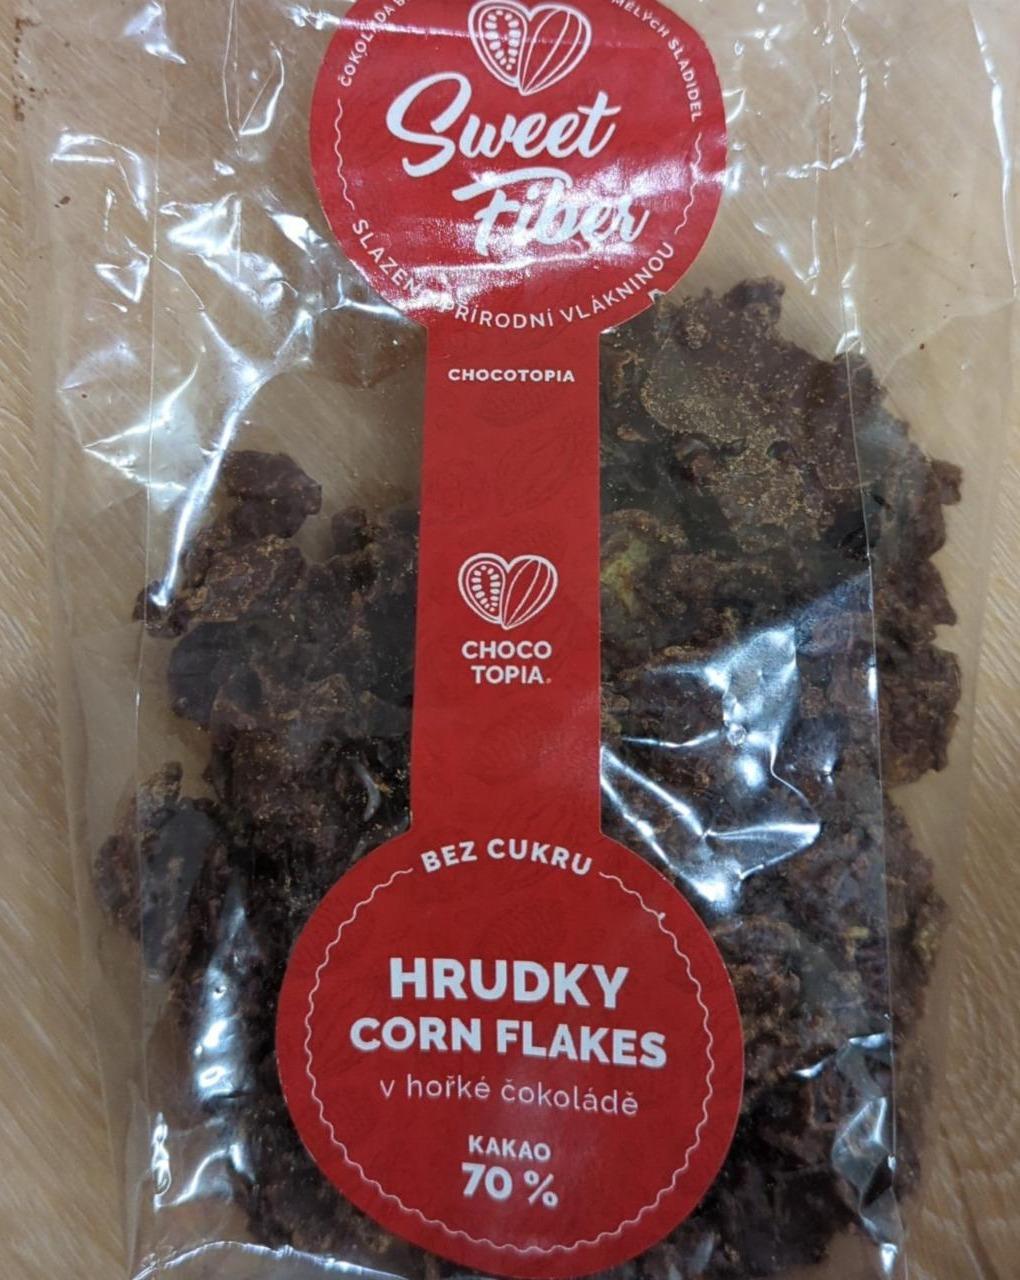 Fotografie - Hrudky Corn Flakes v hořké čokoládě 70% Sweet Fiber